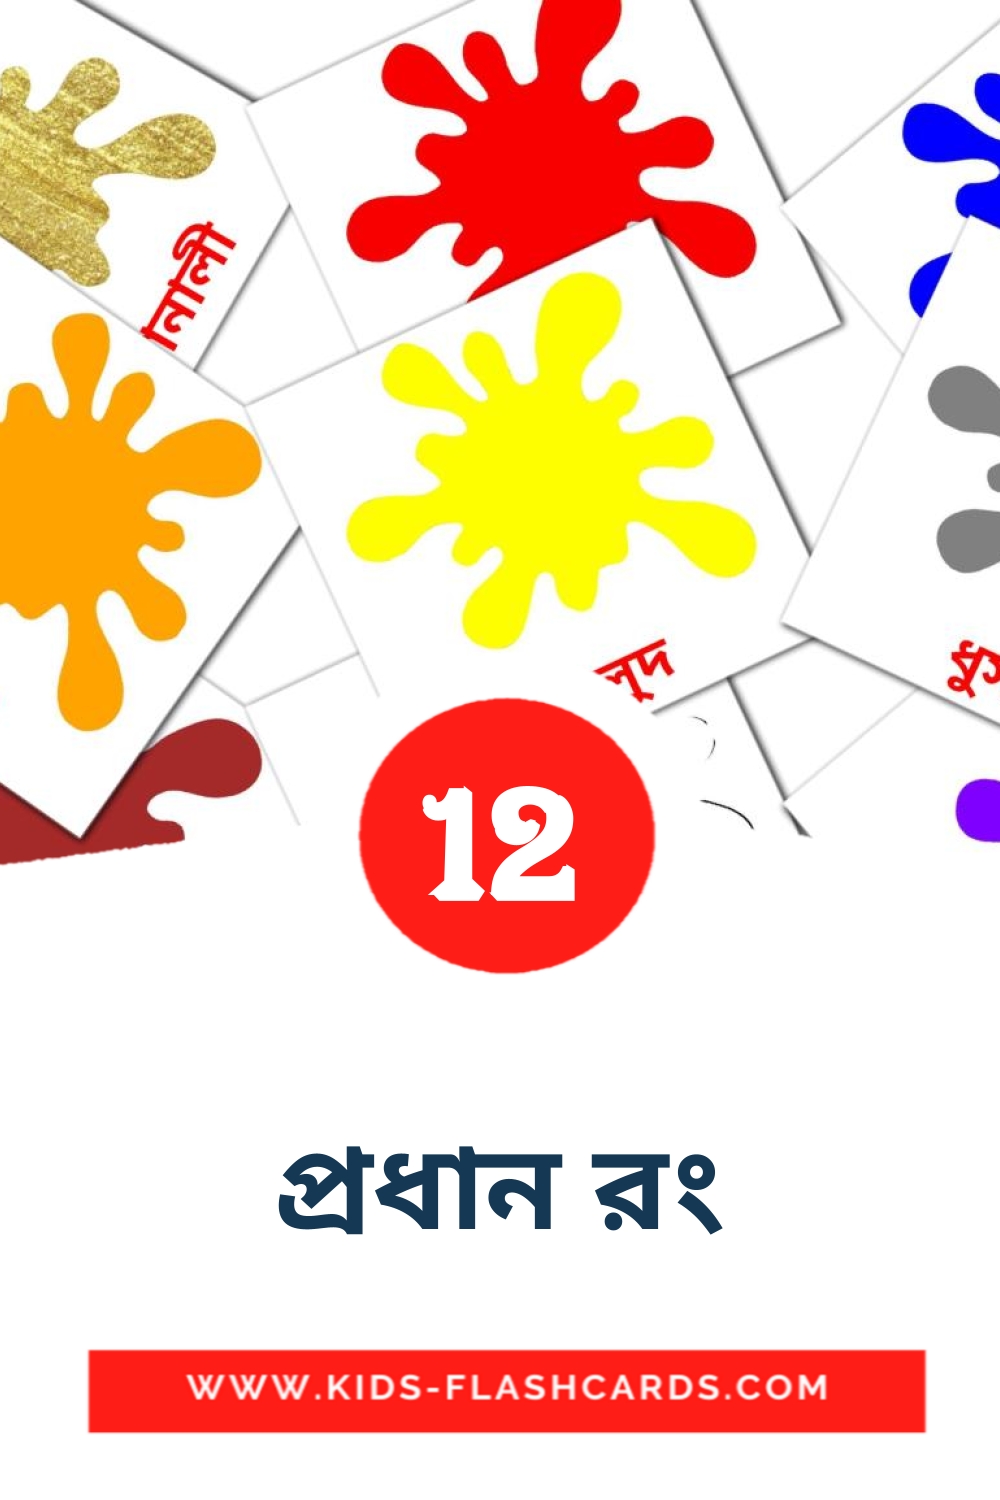 12 Cartões com Imagens de প্রধান রং para Jardim de Infância em bengali